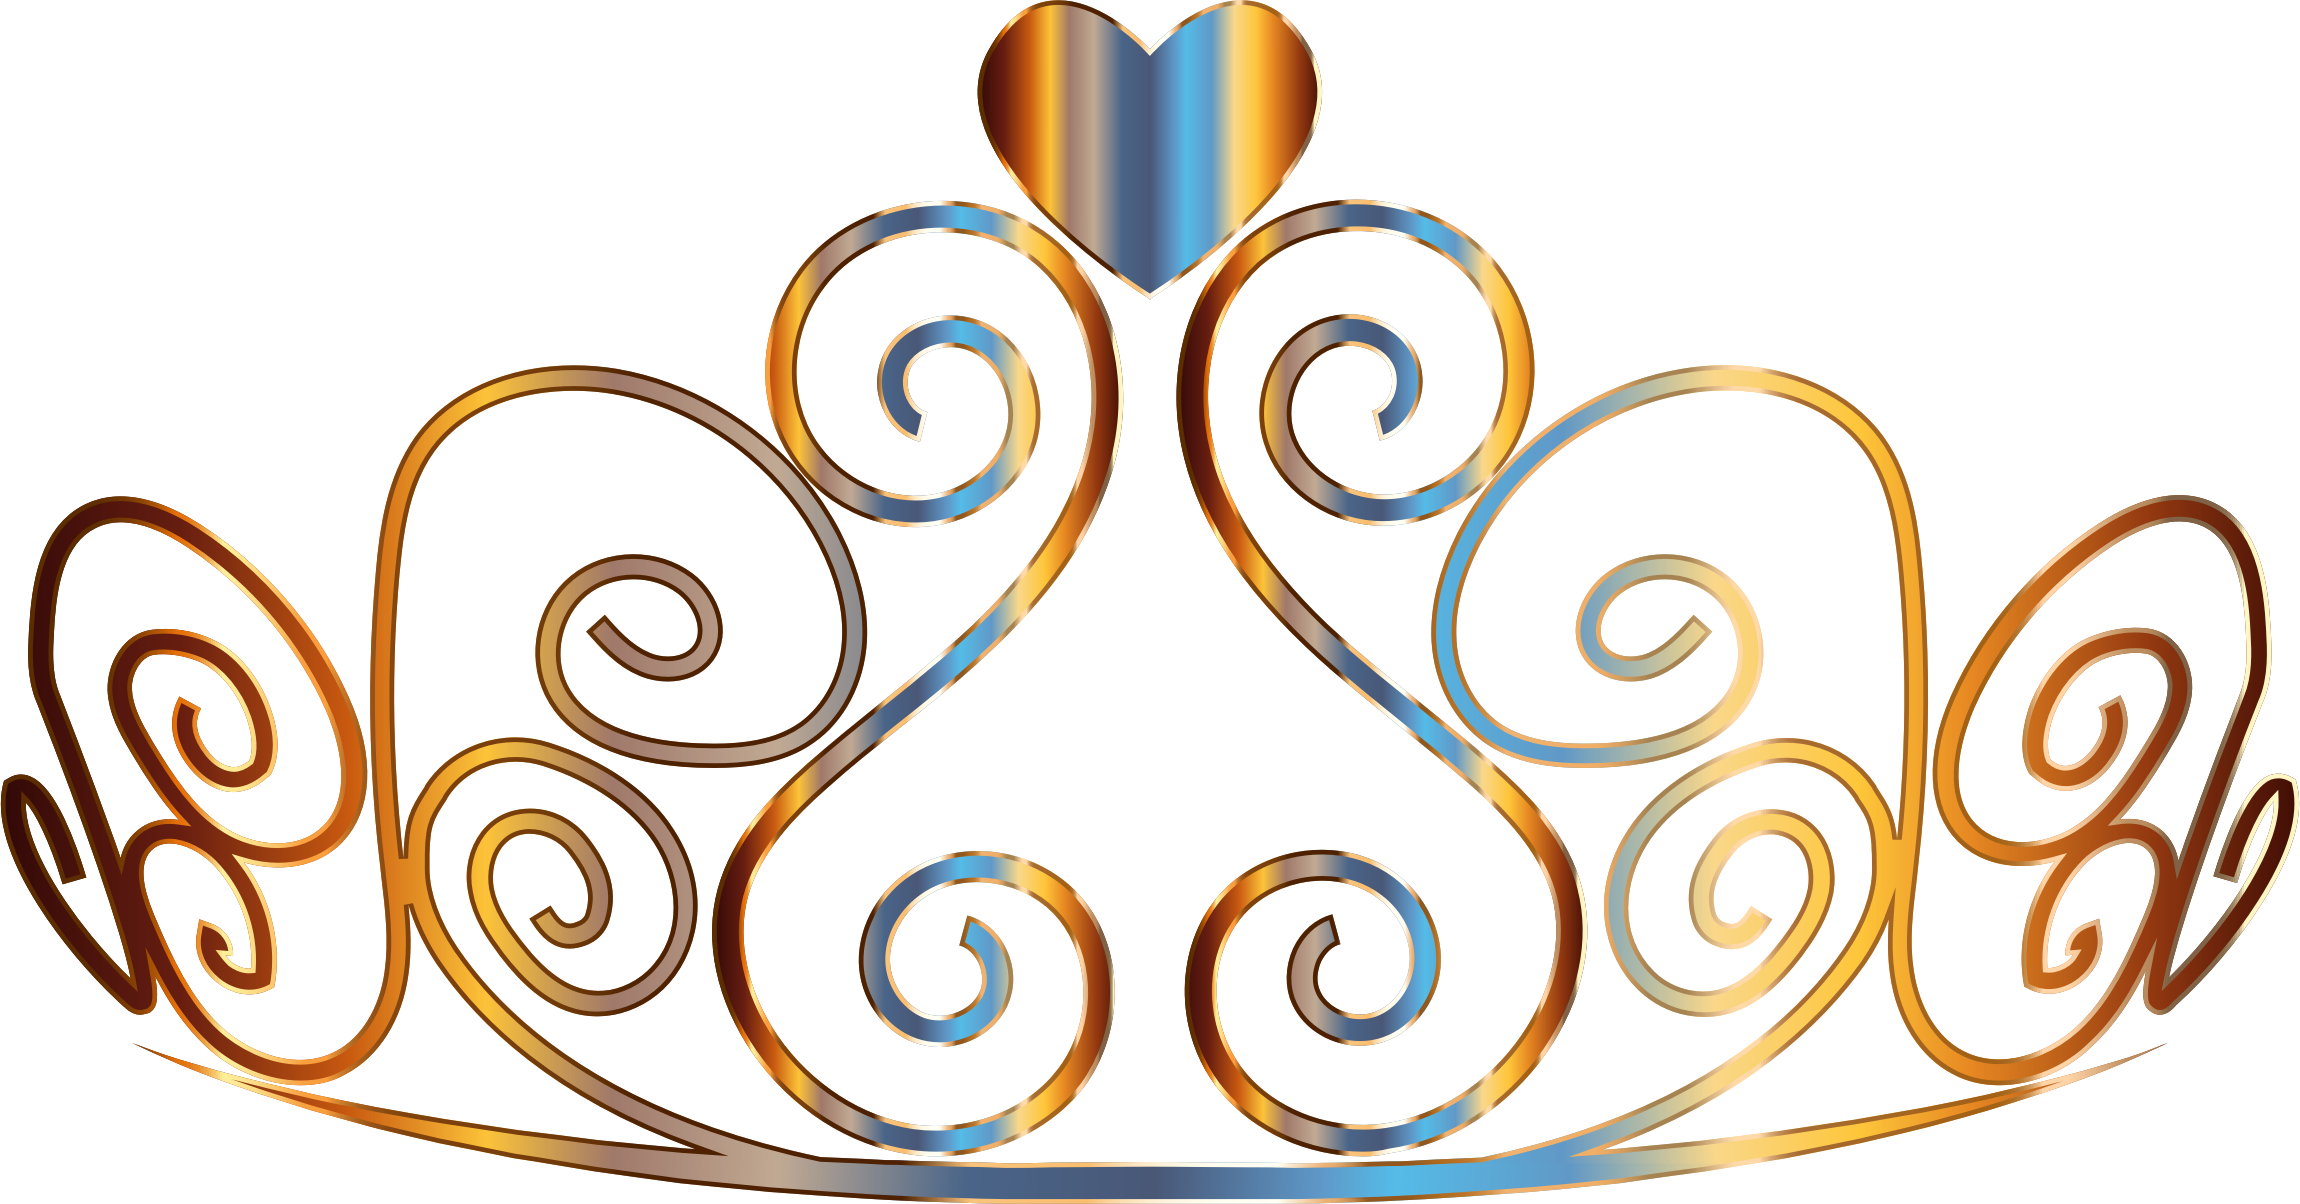 Tiara - Princess Gold Crown Clip Art (2300x1204)